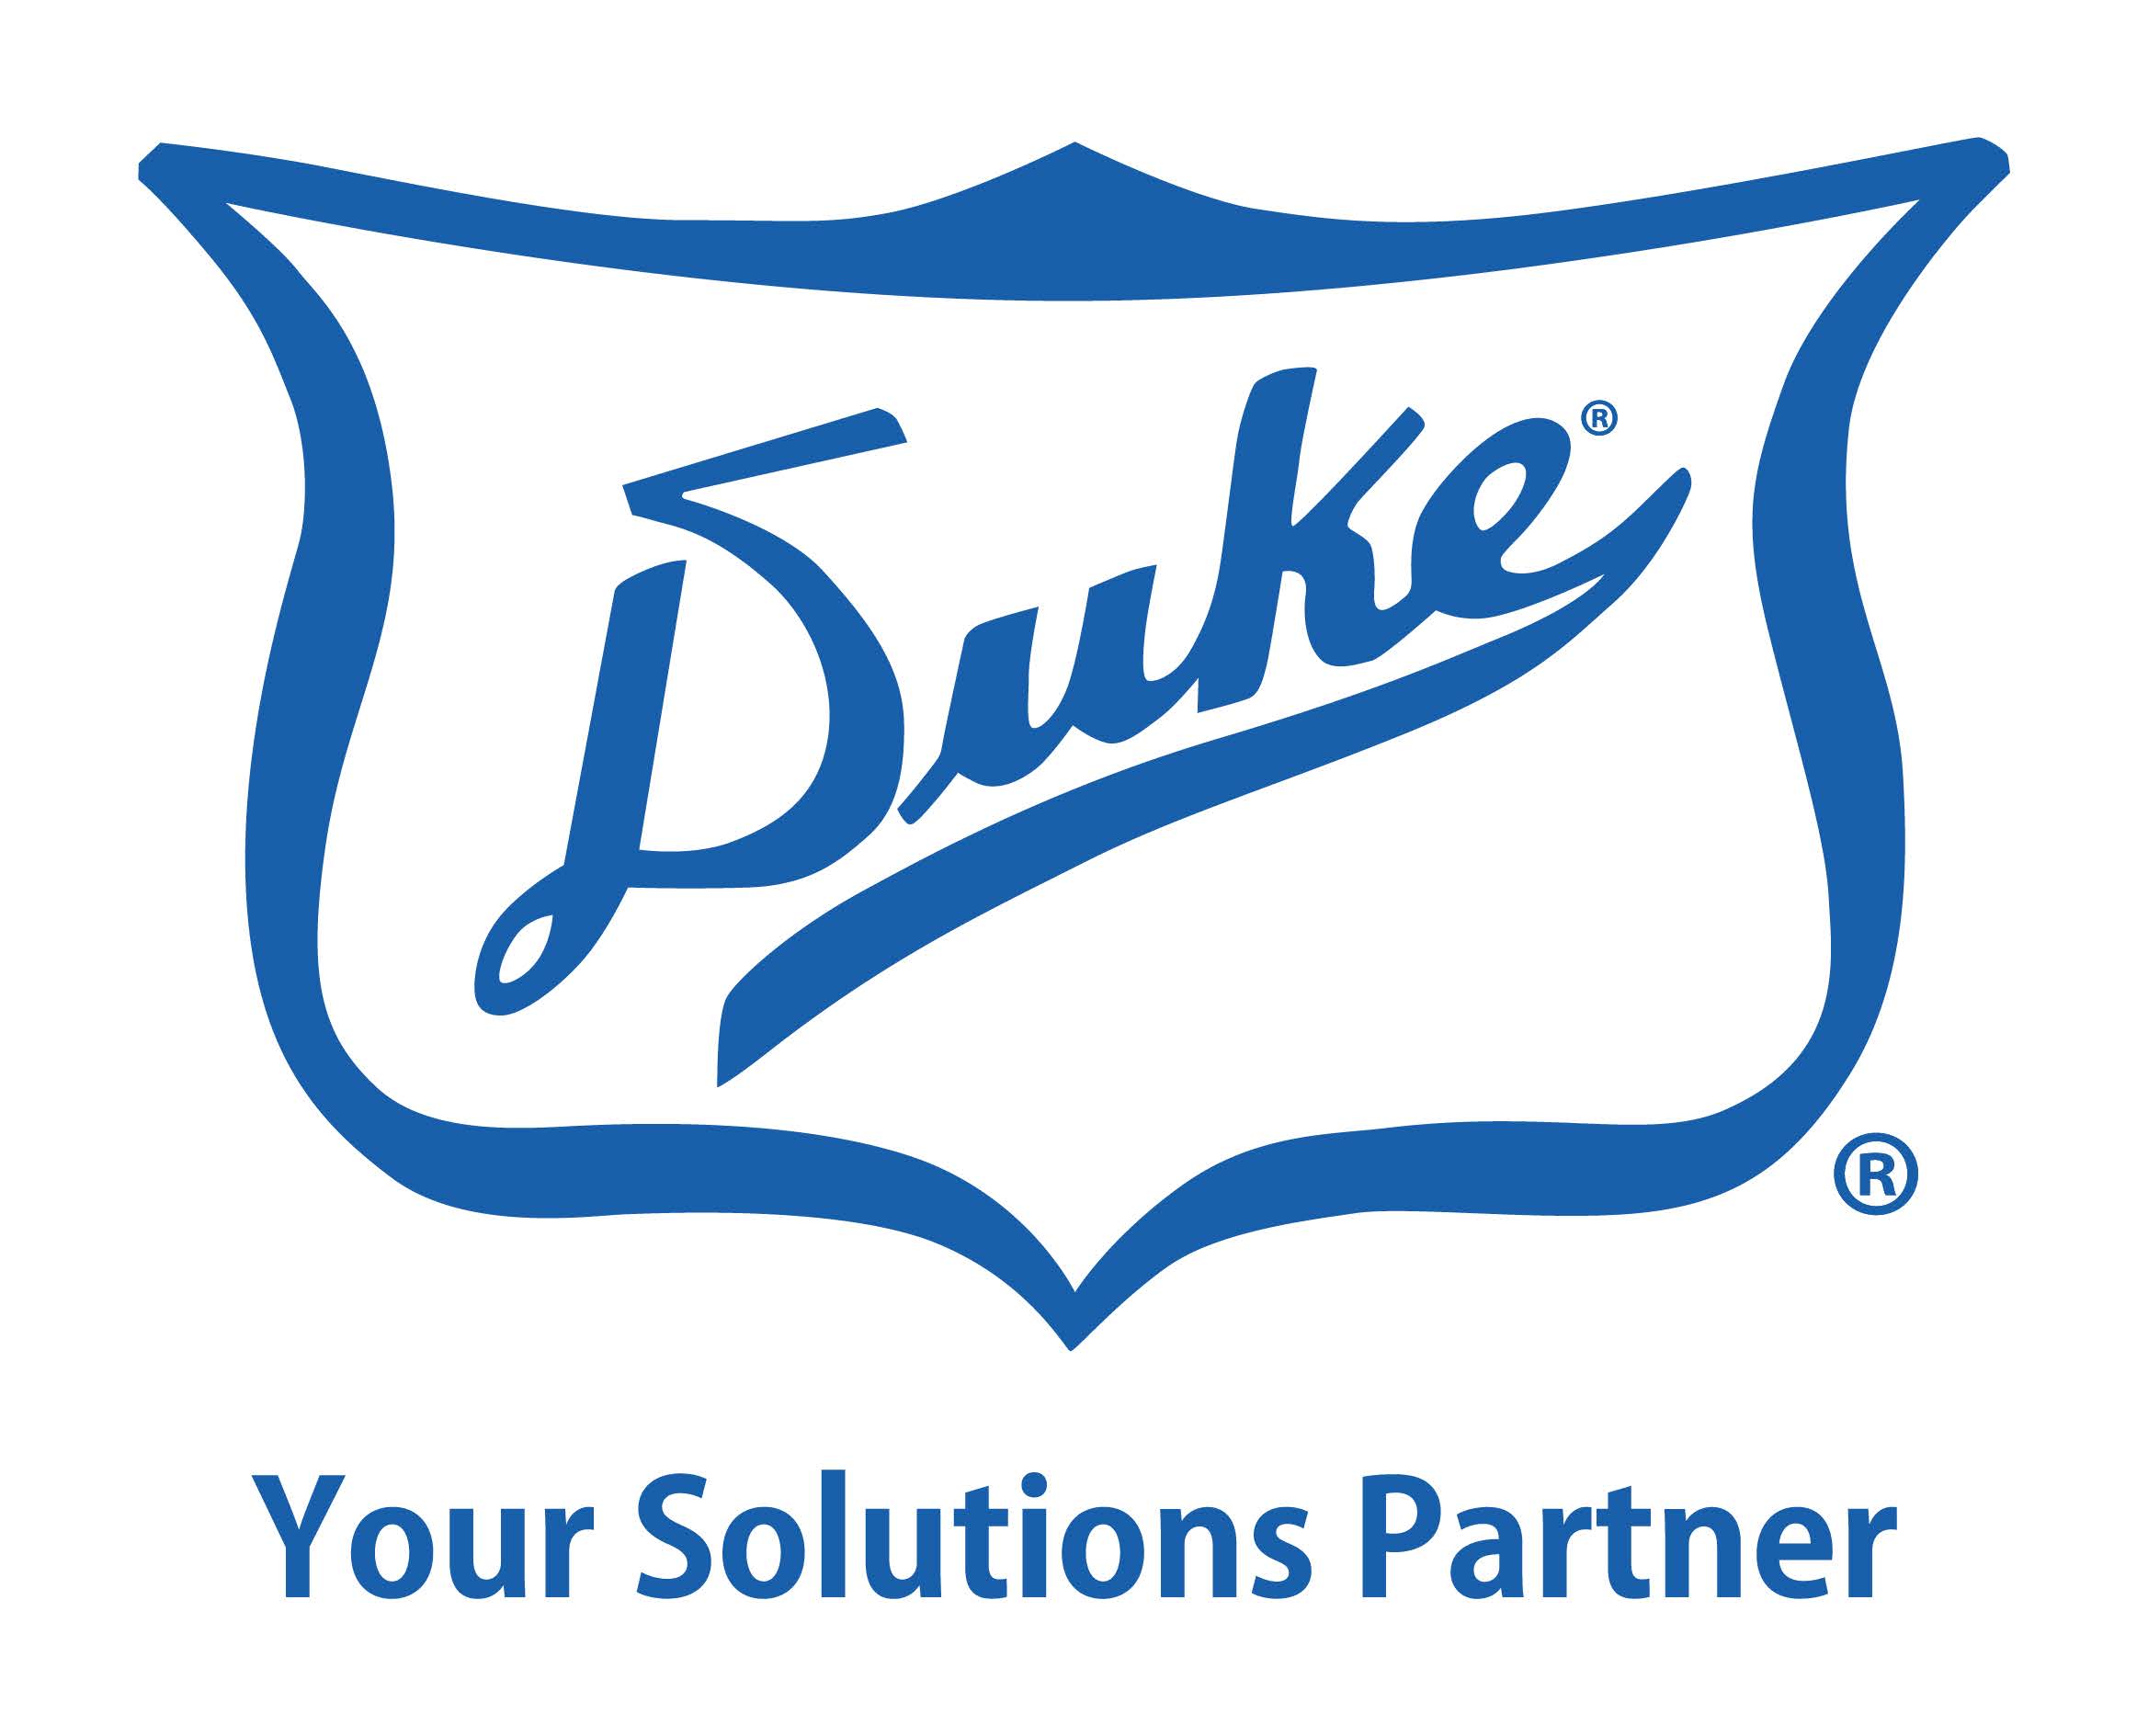 Duke Manufacturing